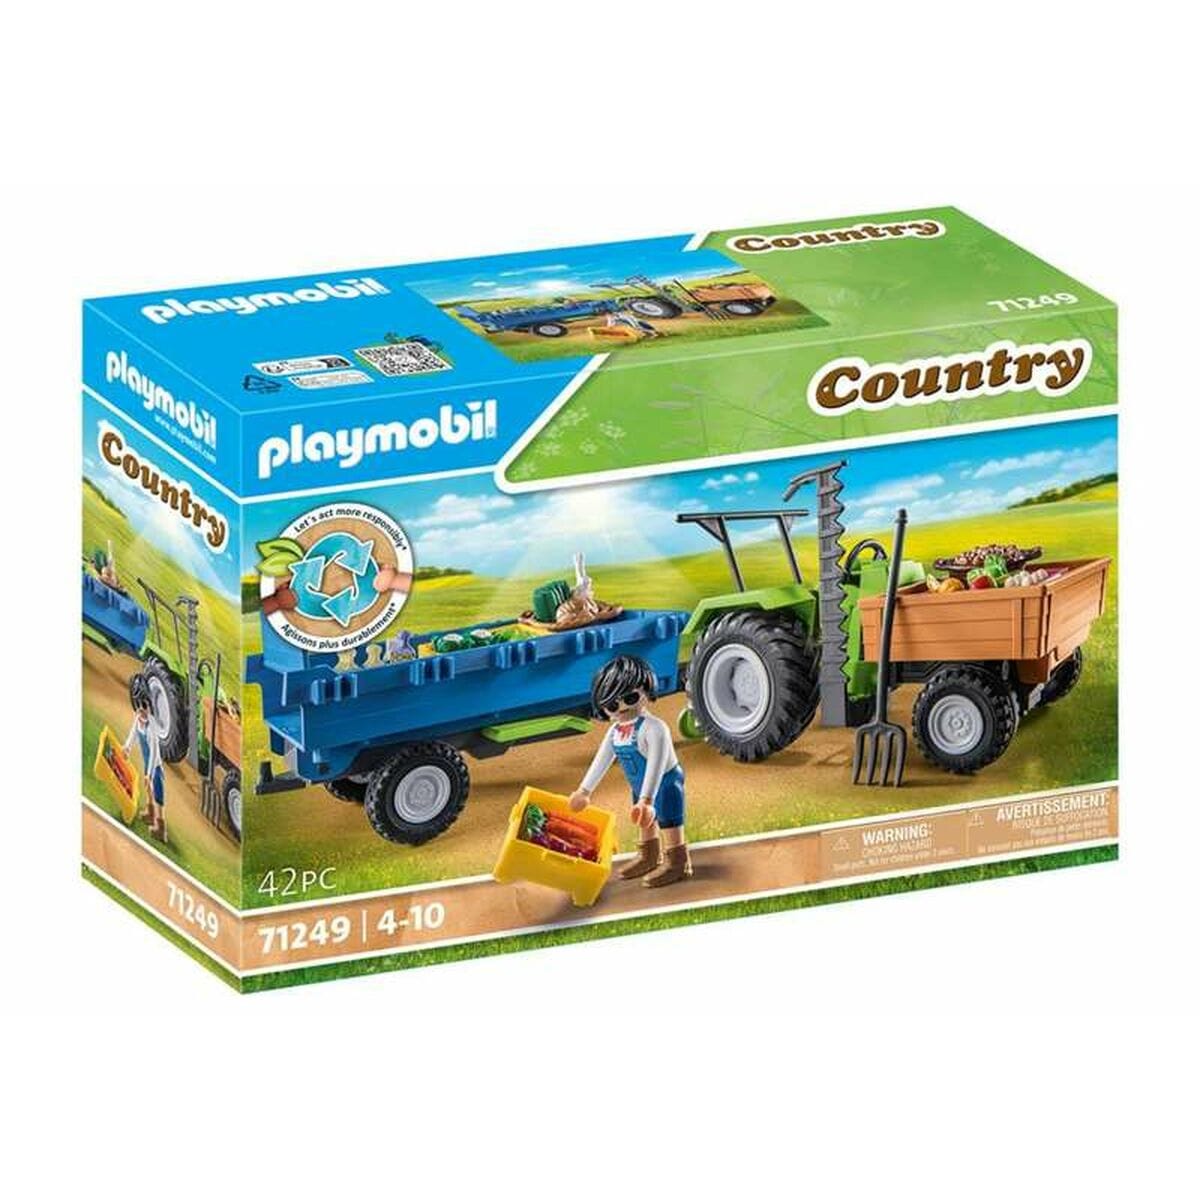 Playmobil Spielzeug | Kostüme > Spielzeug und Spiele > Weiteres spielzeug Playset Playmobil Country Tractor 42 Stücke